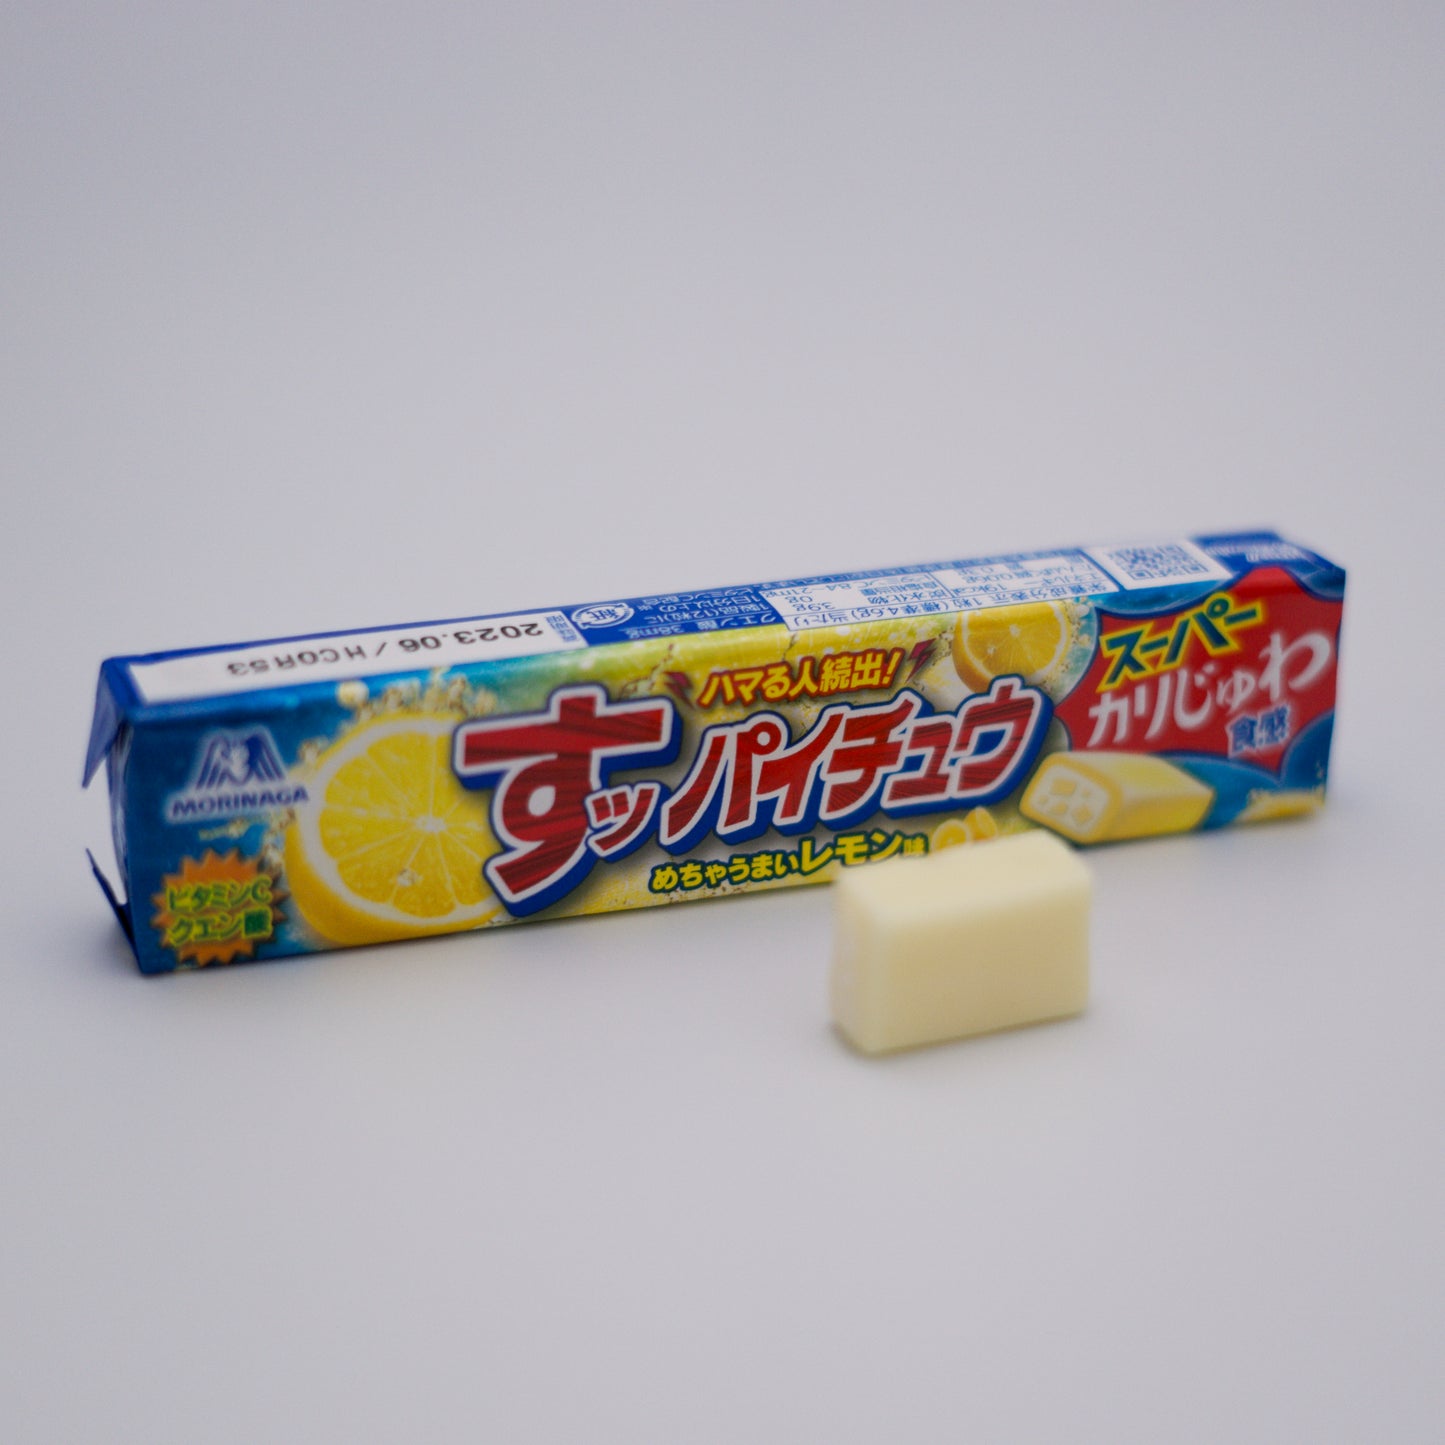 Expired - Morinaga Hi-Chew Soft Candy Sour Lemon Flavour 12 Pcs